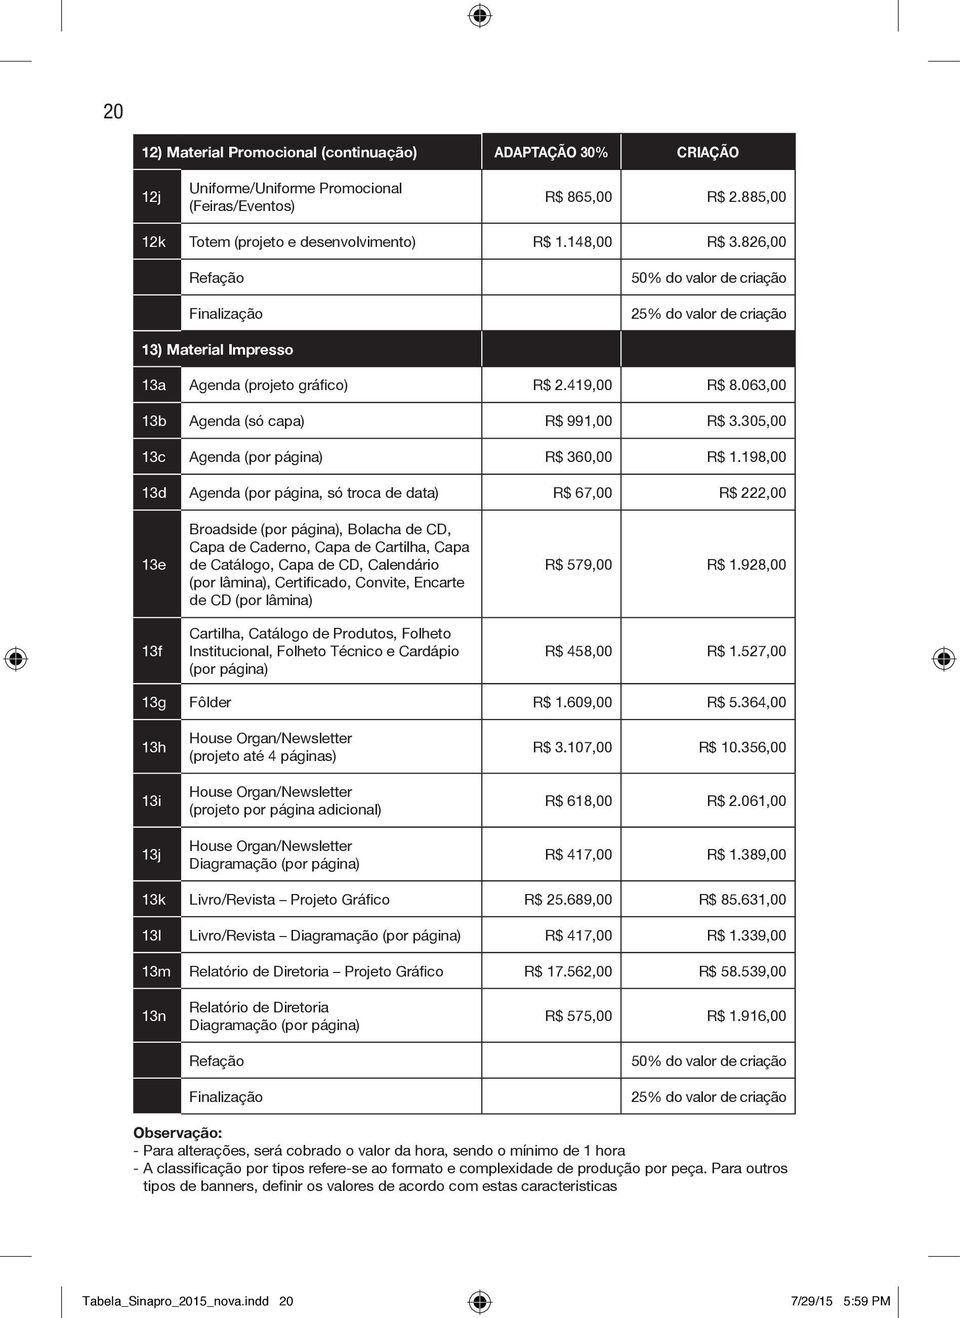 305,00 13c Agenda (por página) R$ 360,00 R$ 1.